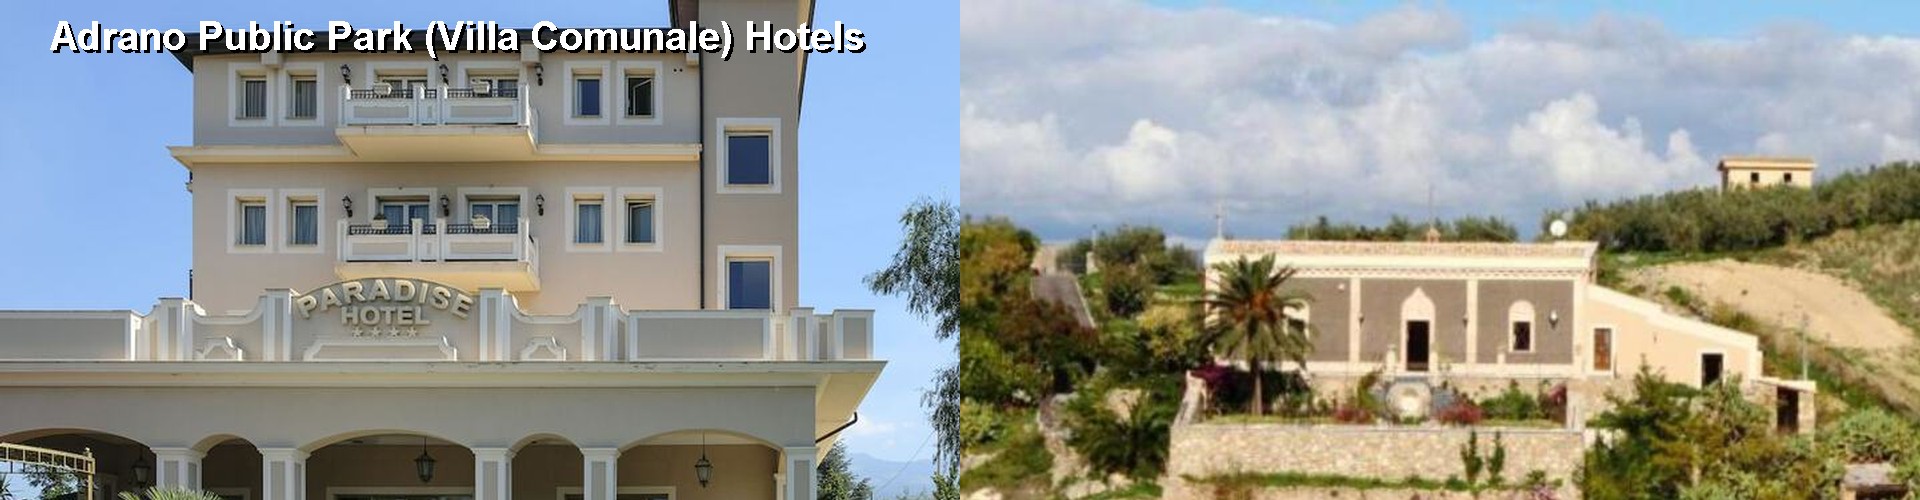 5 Best Hotels near Adrano Public Park (Villa Comunale)